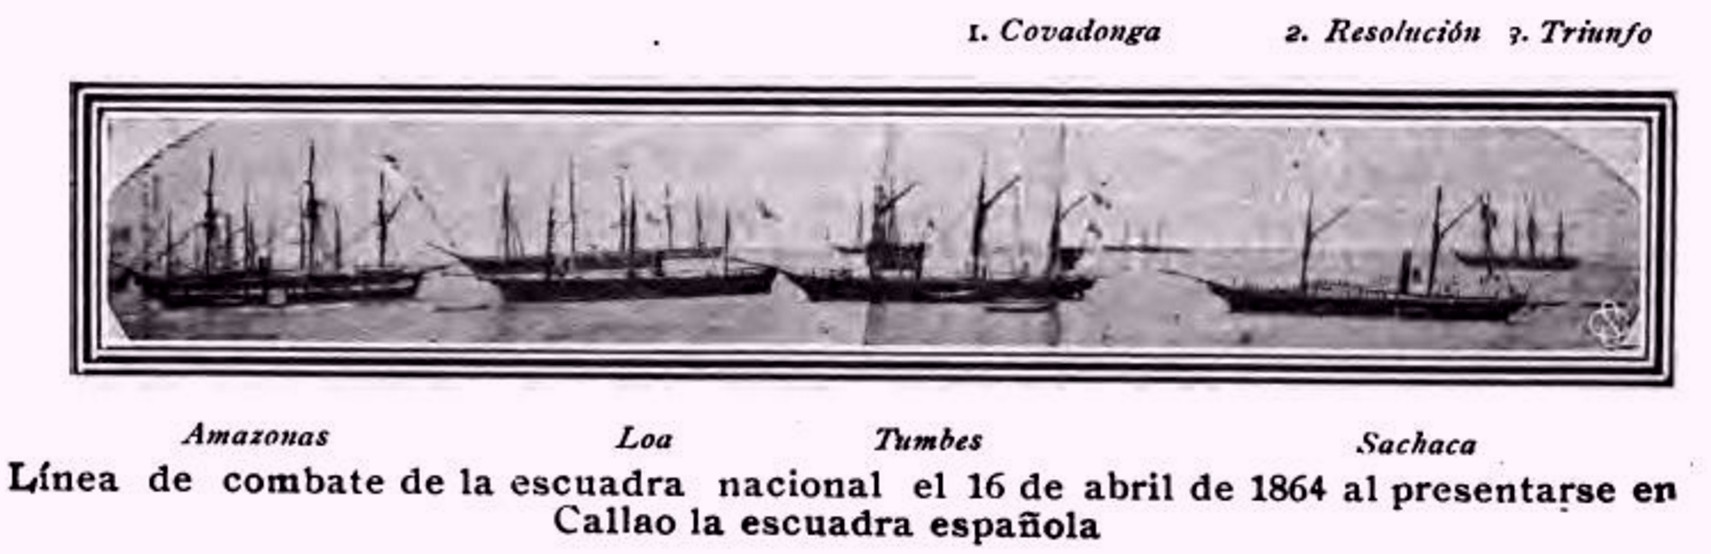 PER_escuadra_1864.jpg